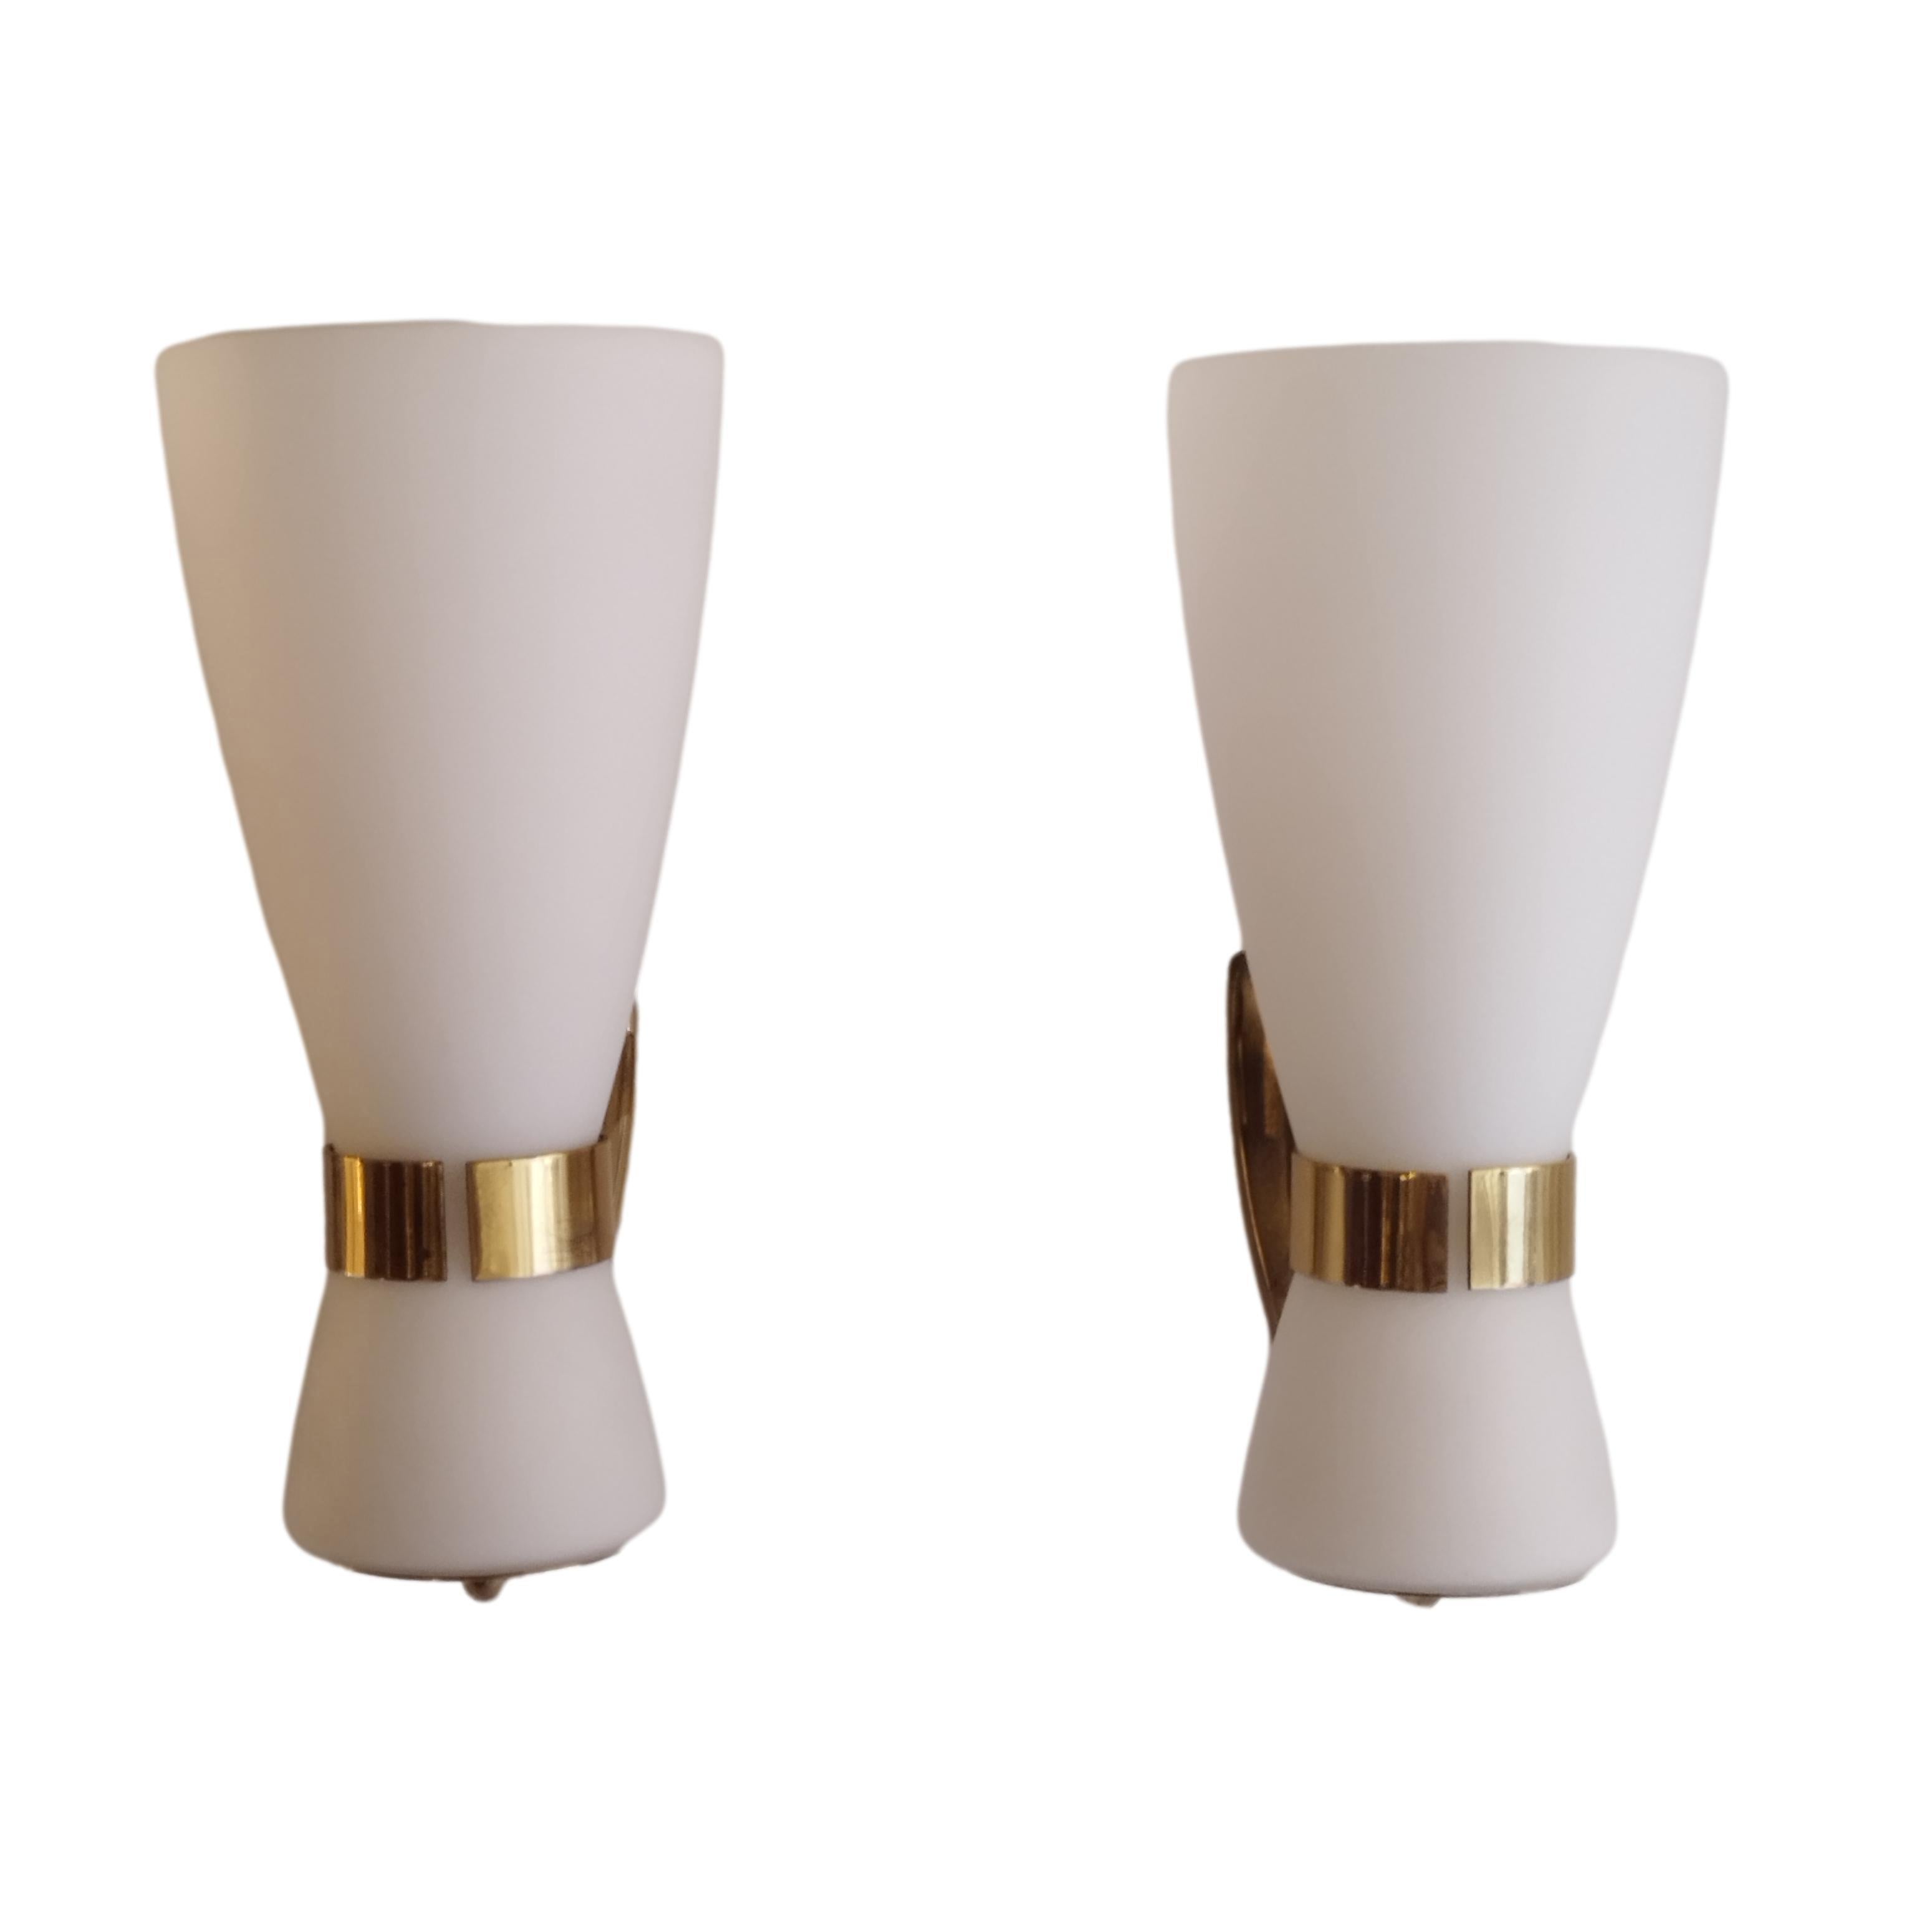 Seltenes Paar Wandlampen Mod. Nr. 2118, hergestellt in Italien von Stilnovo in den späten 1950er Jahren.
Sie besteht aus einem Messingrahmen mit sandgestrahltem, opalweißem Schirm.
Gelbes Label von Stilnovo auf dem Messing.